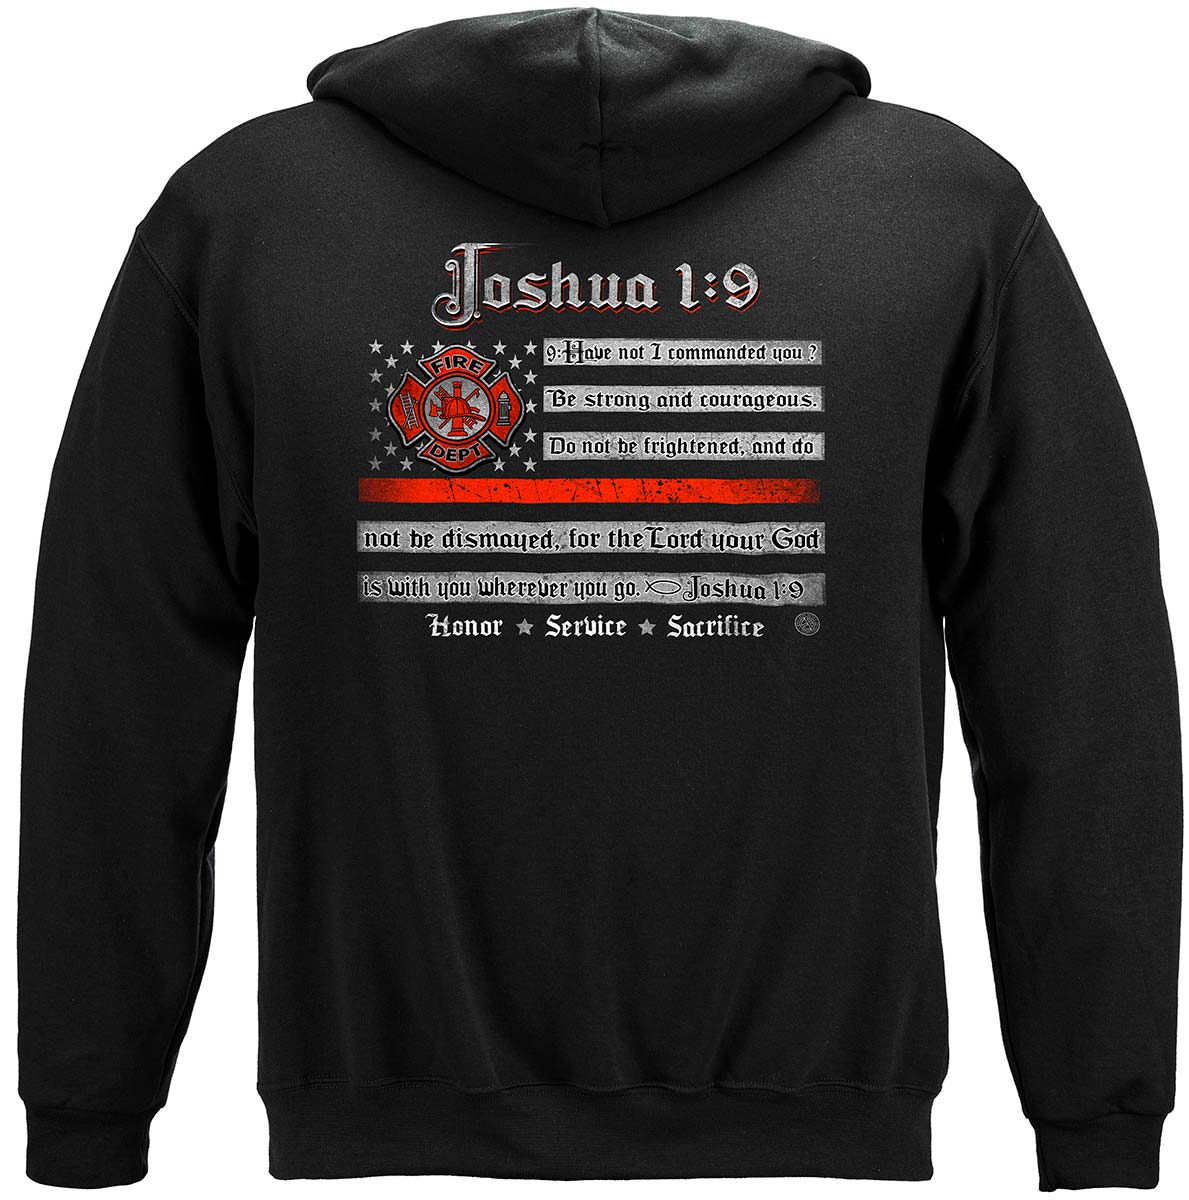 Firefighter Joshua 1:9 Premium Hooded Sweat Shirt